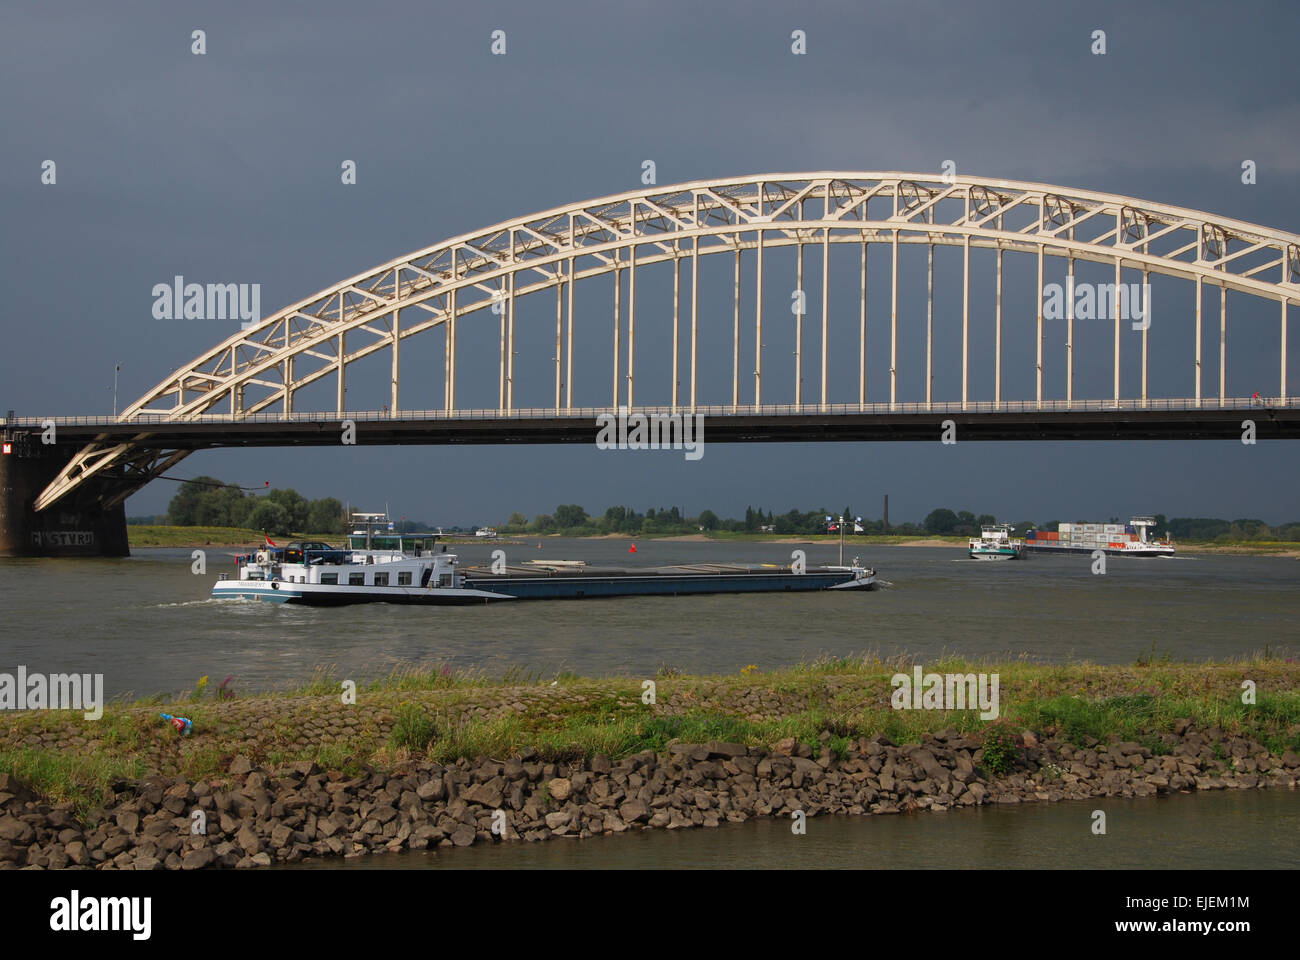 Waalbrug Nijmegen, Netherlands Stock Photo